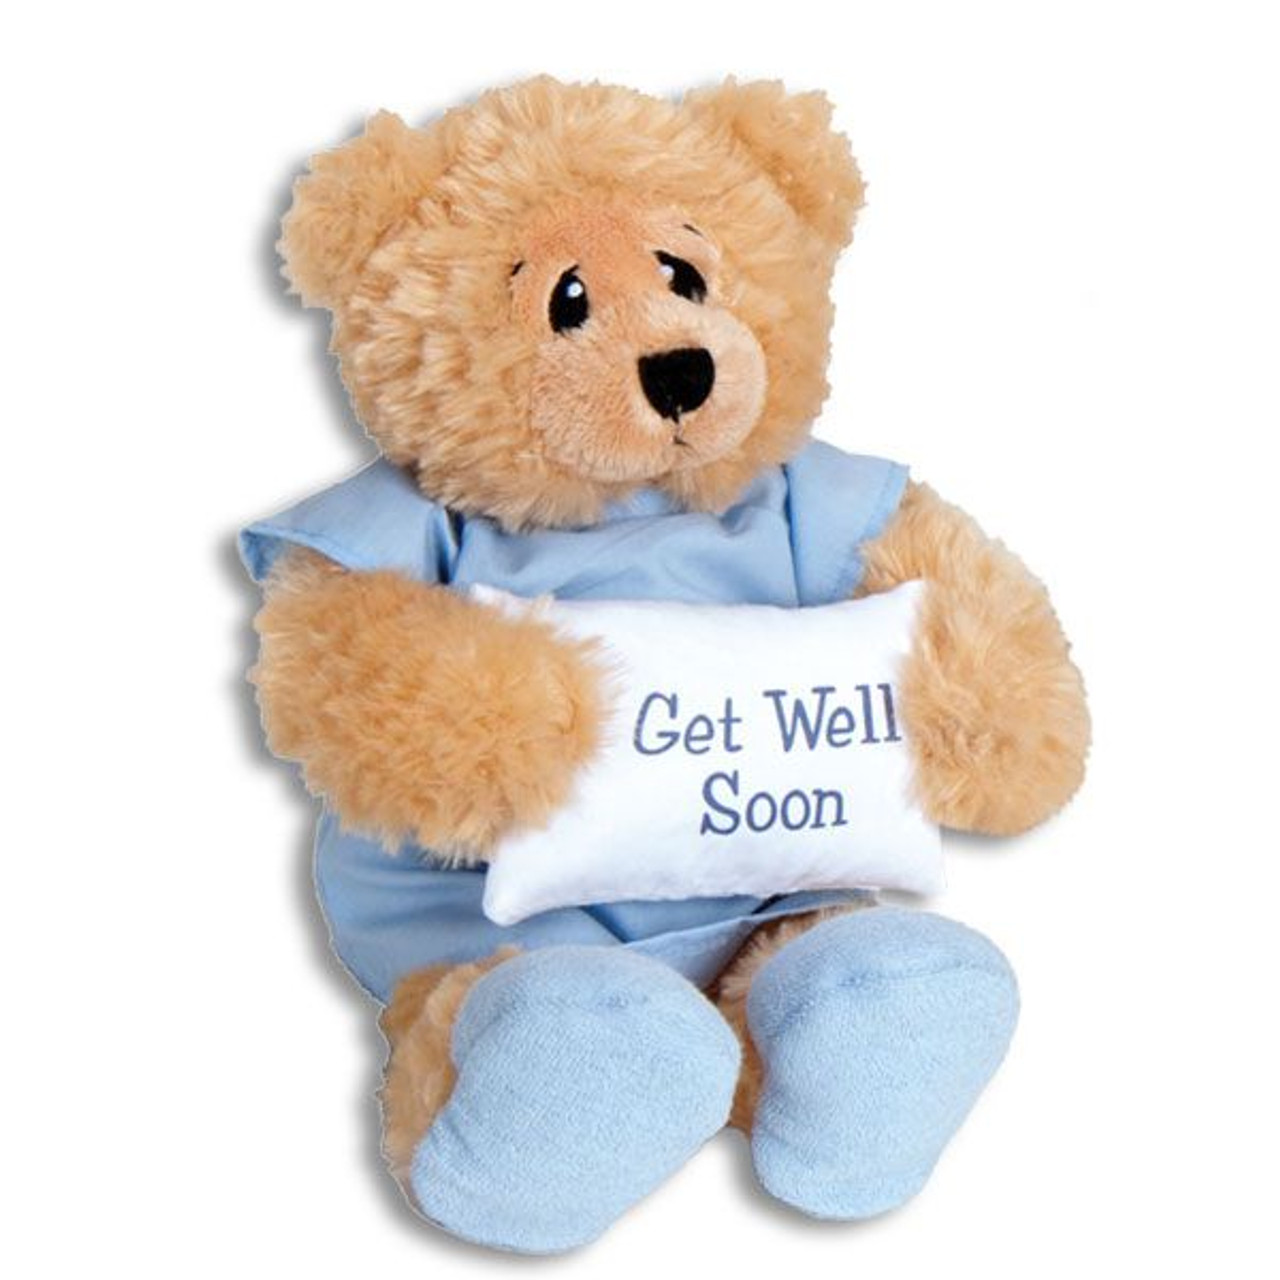 Get Well Soon Teddy Bear Mylar Ballooon